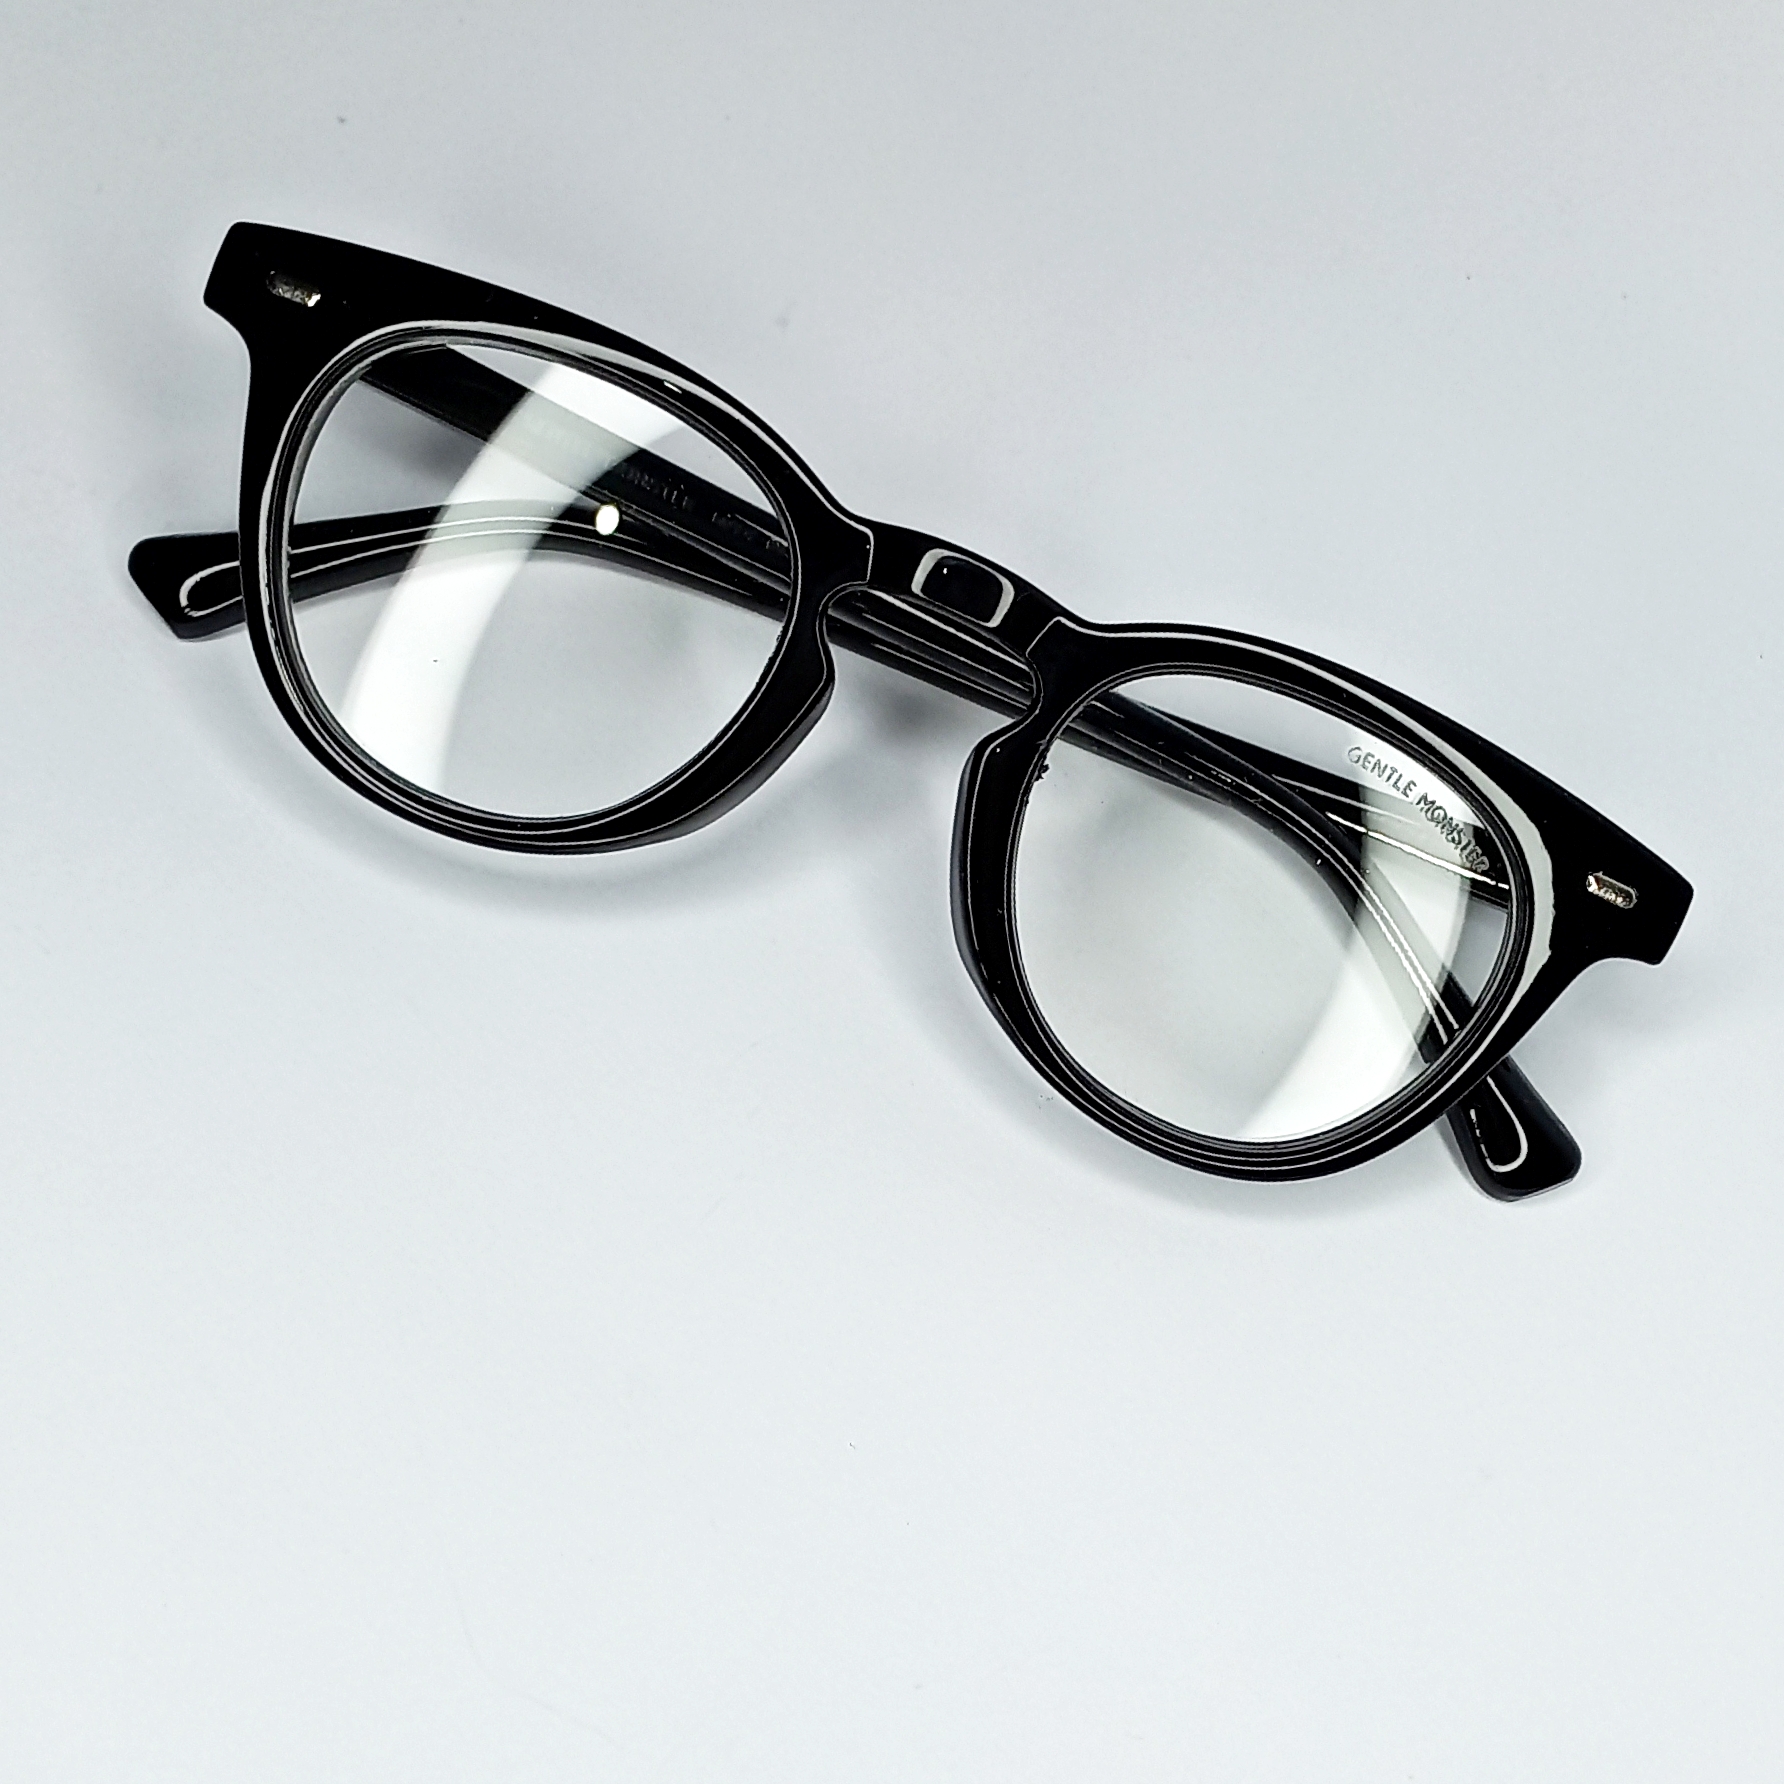 فریم عینک طبی جنتل مانستر مدل Hds9 -  - 5